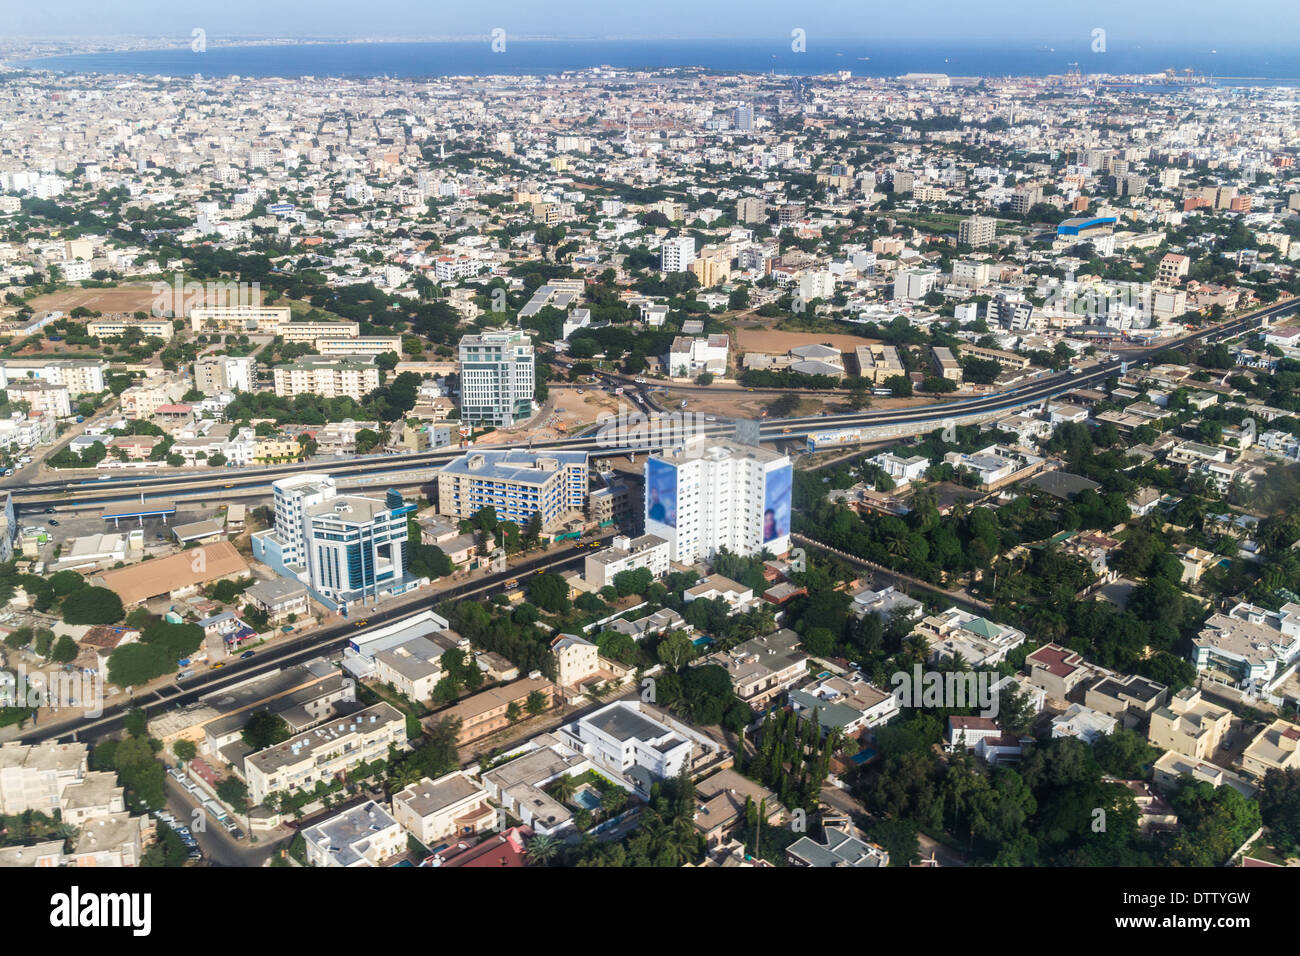 Vue aérienne de la ville de Dakar, Sénégal, montrant les bâtiments d'une grande densité et d'une route Banque D'Images